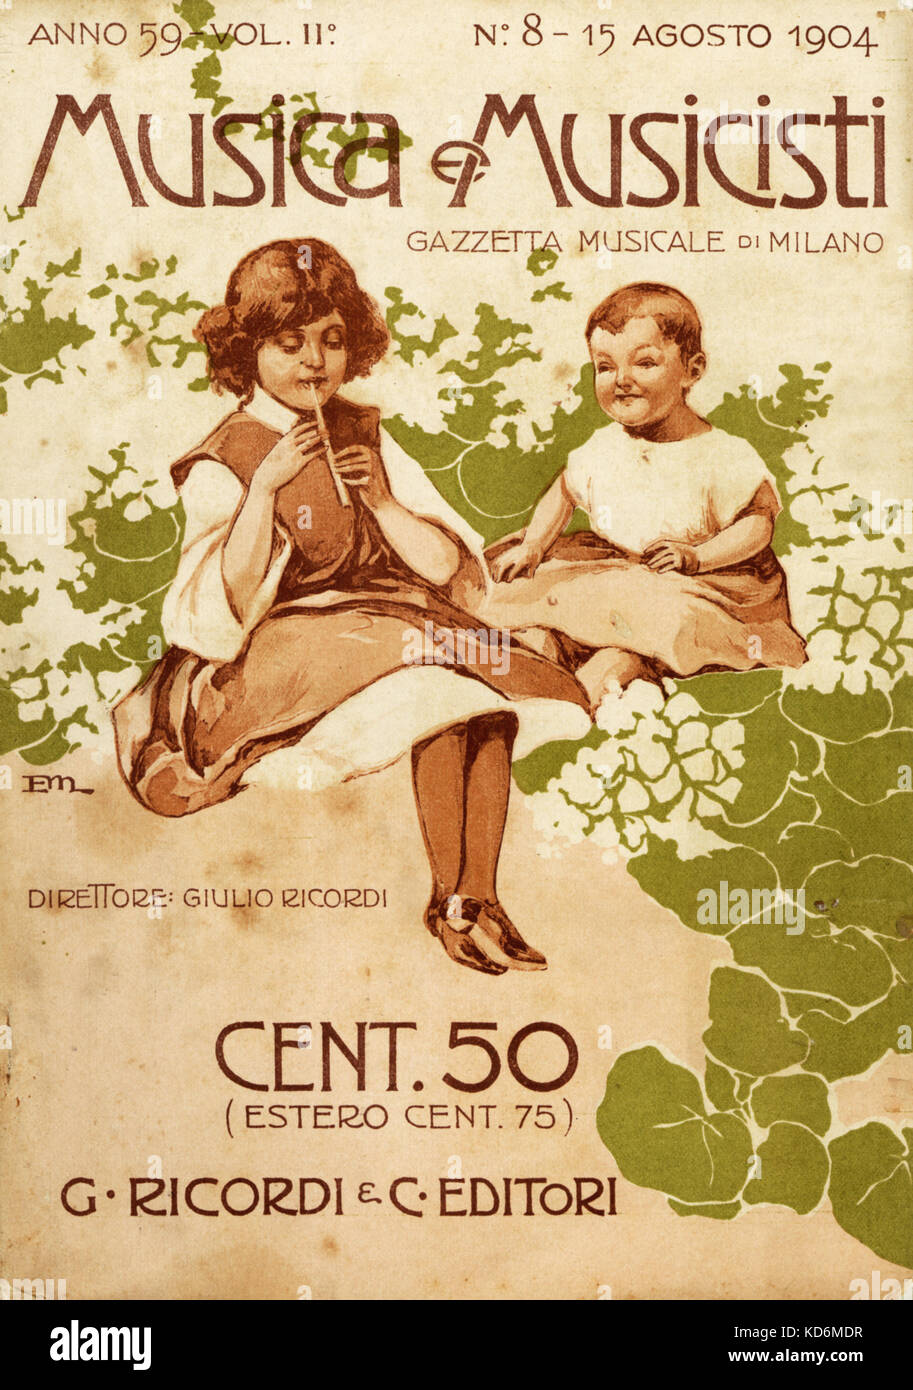 Abdeckung des 20. Jahrhunderts italienische Musik Magazin, "Musica e Musicisti", die musikalische Zeitung von Mailand, mit zwei Kindern im typischen 1900er Jahre Stil, ein Mädchen spielen auf dem Recorder. Stockfoto